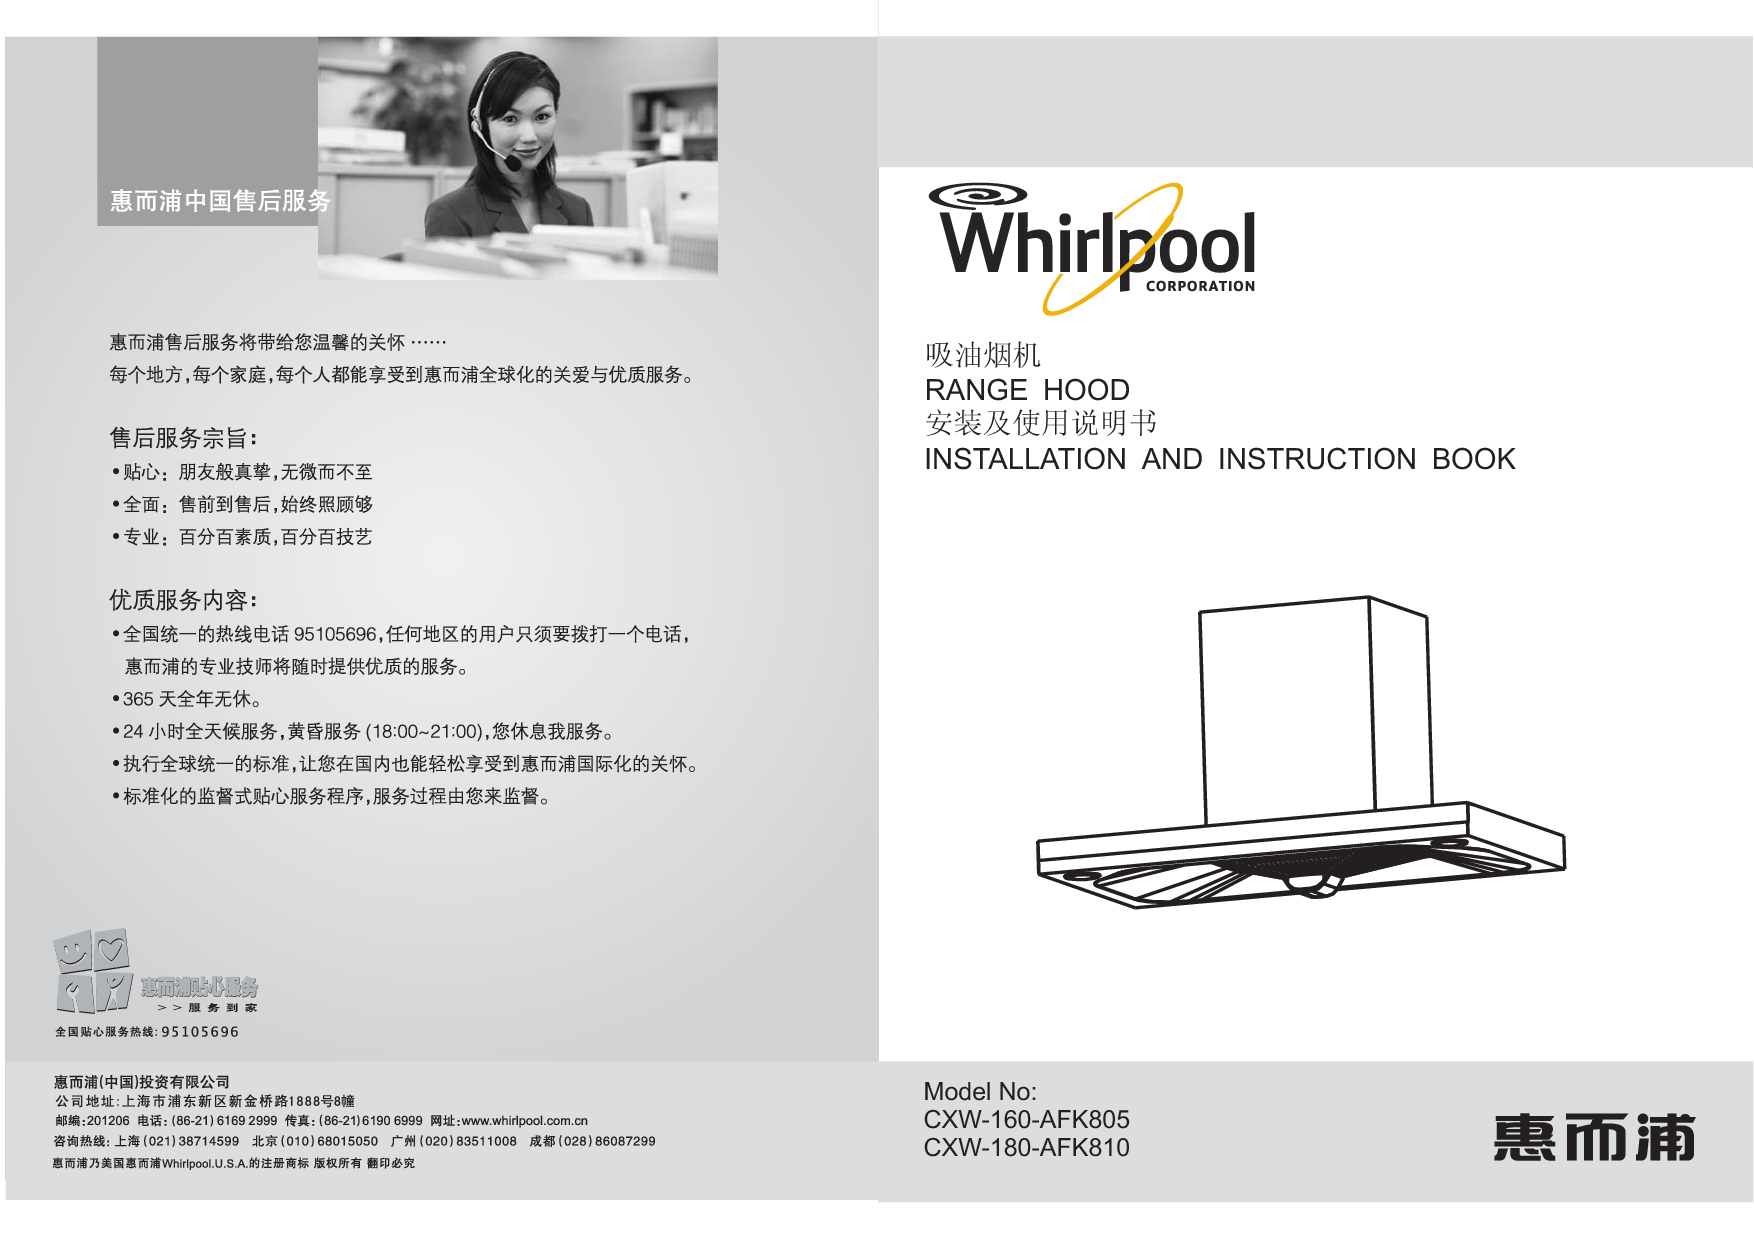 惠而浦 Whirlpool CXW-160-AFK805 安装使用说明书 封面